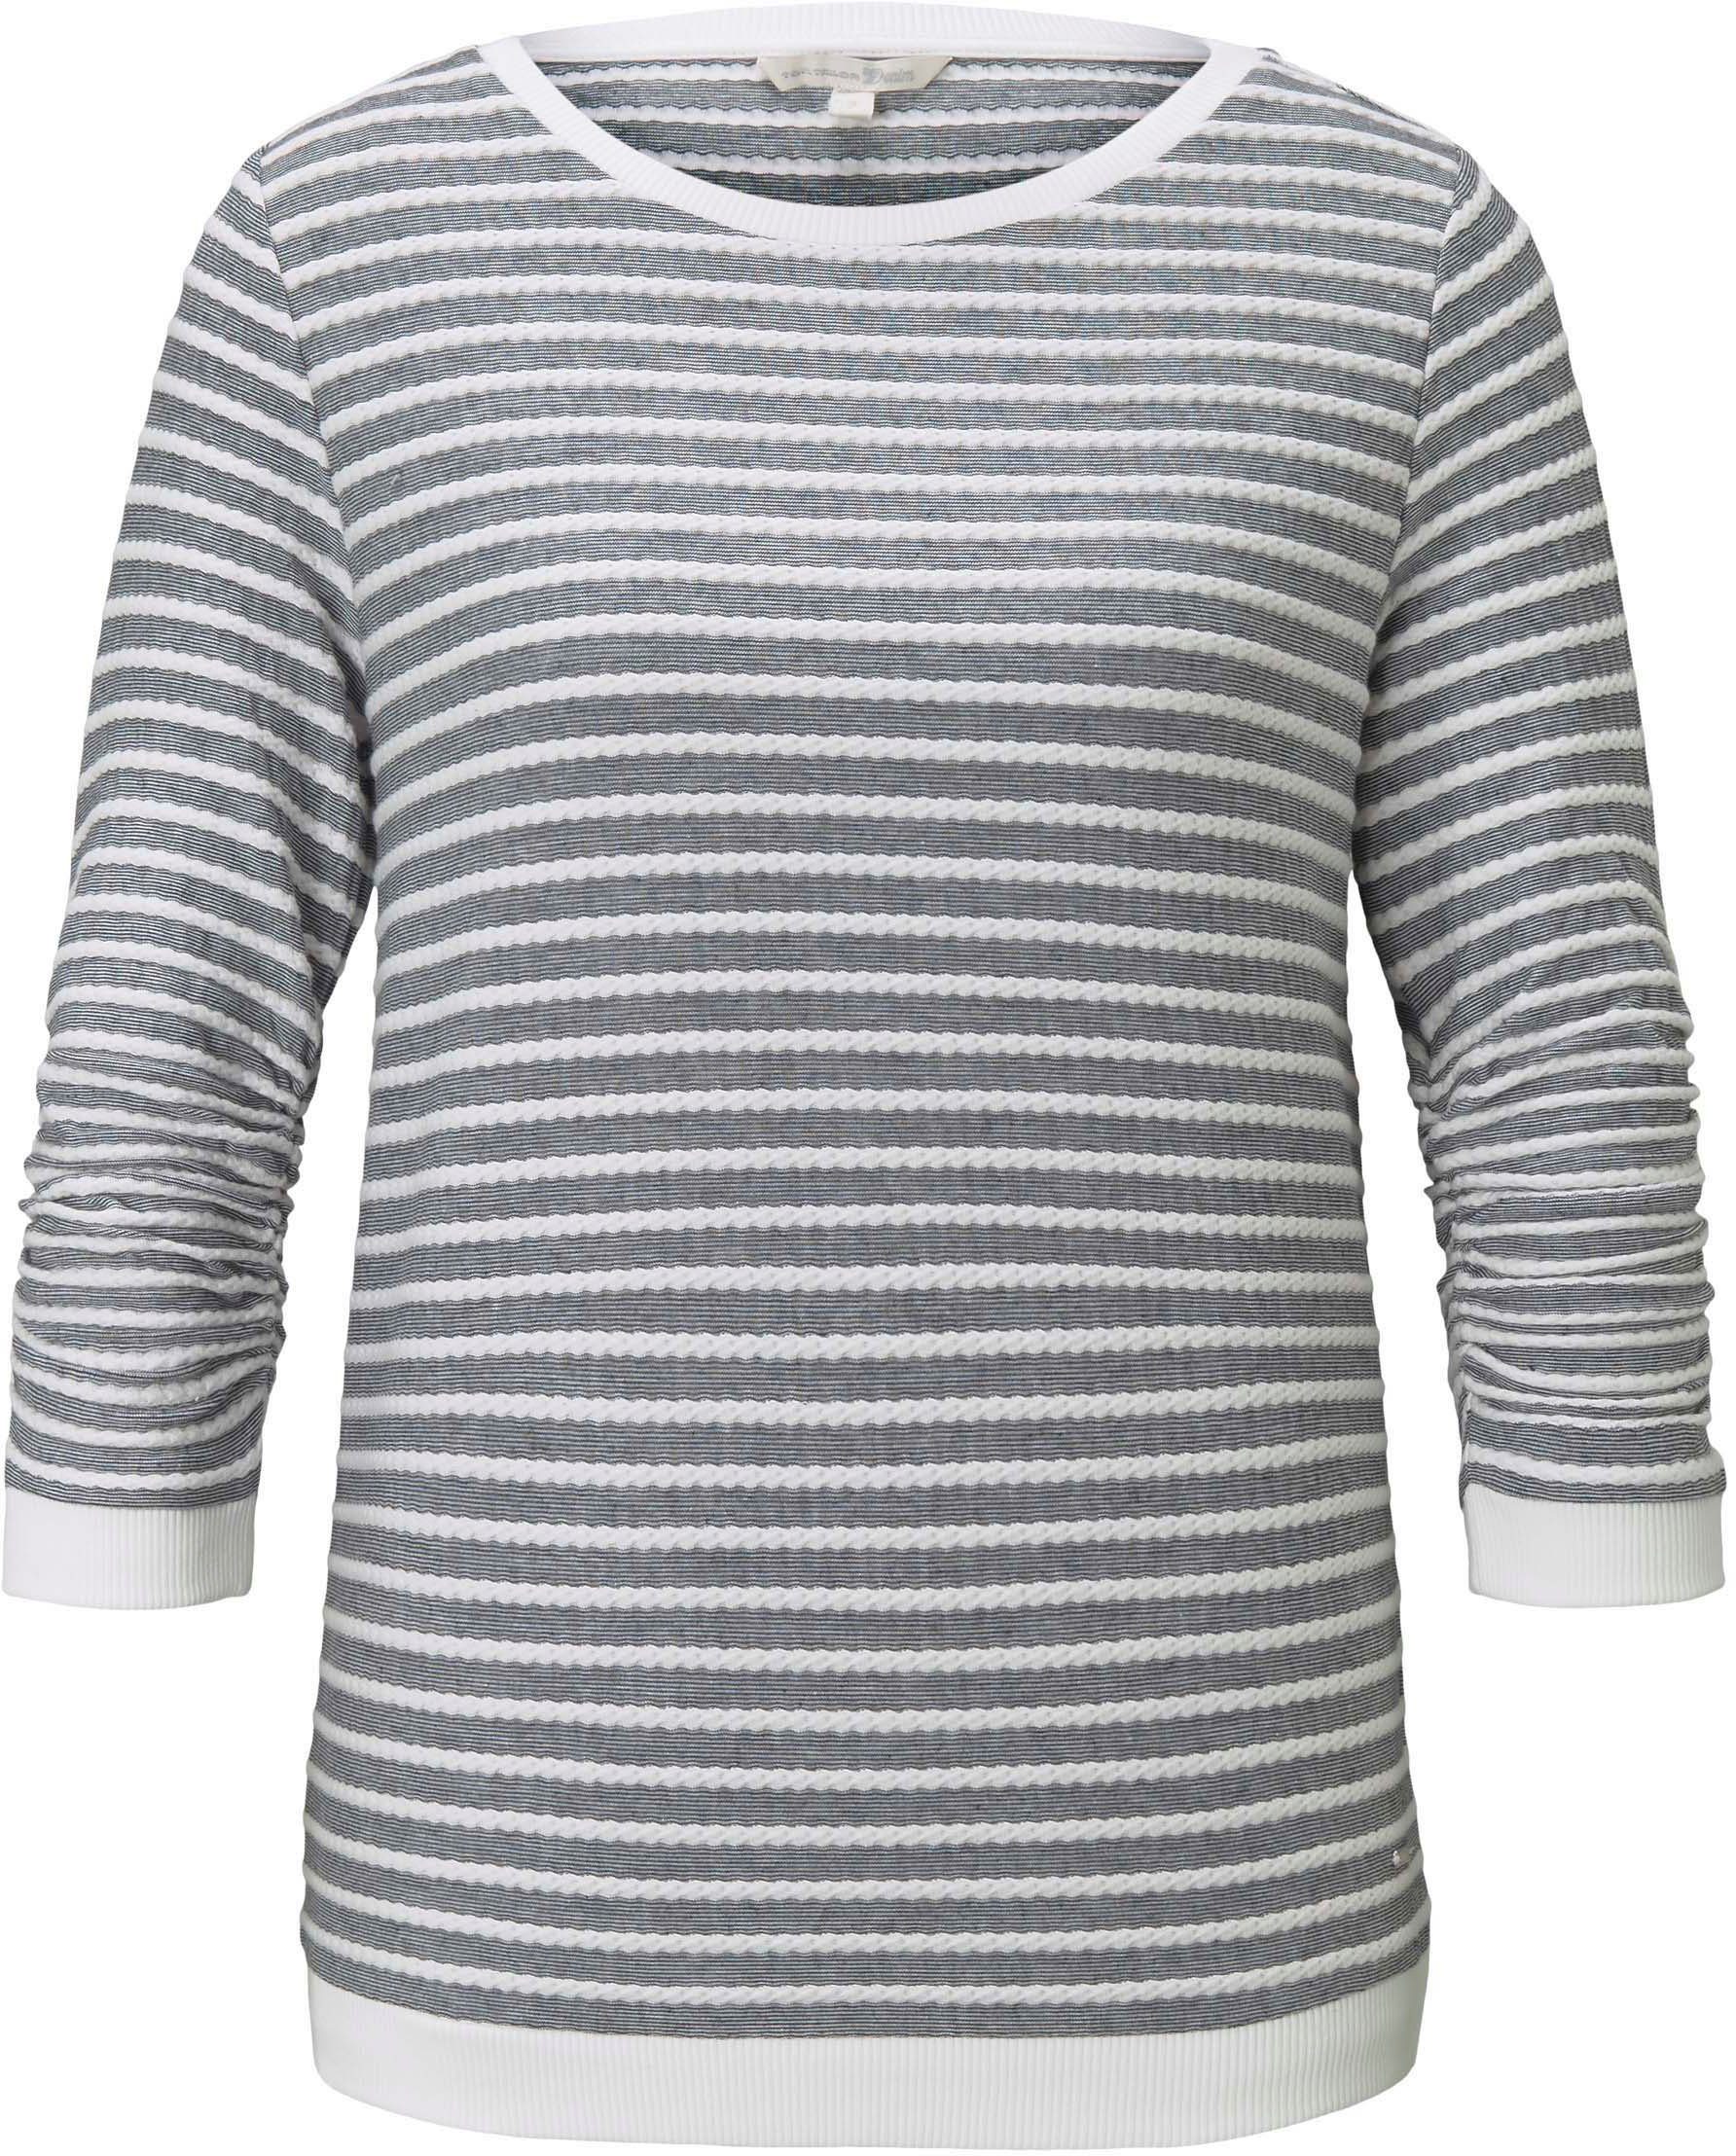 TOM Sweatshirt mit grau-gestreift Streifen TAILOR strukturierten Denim